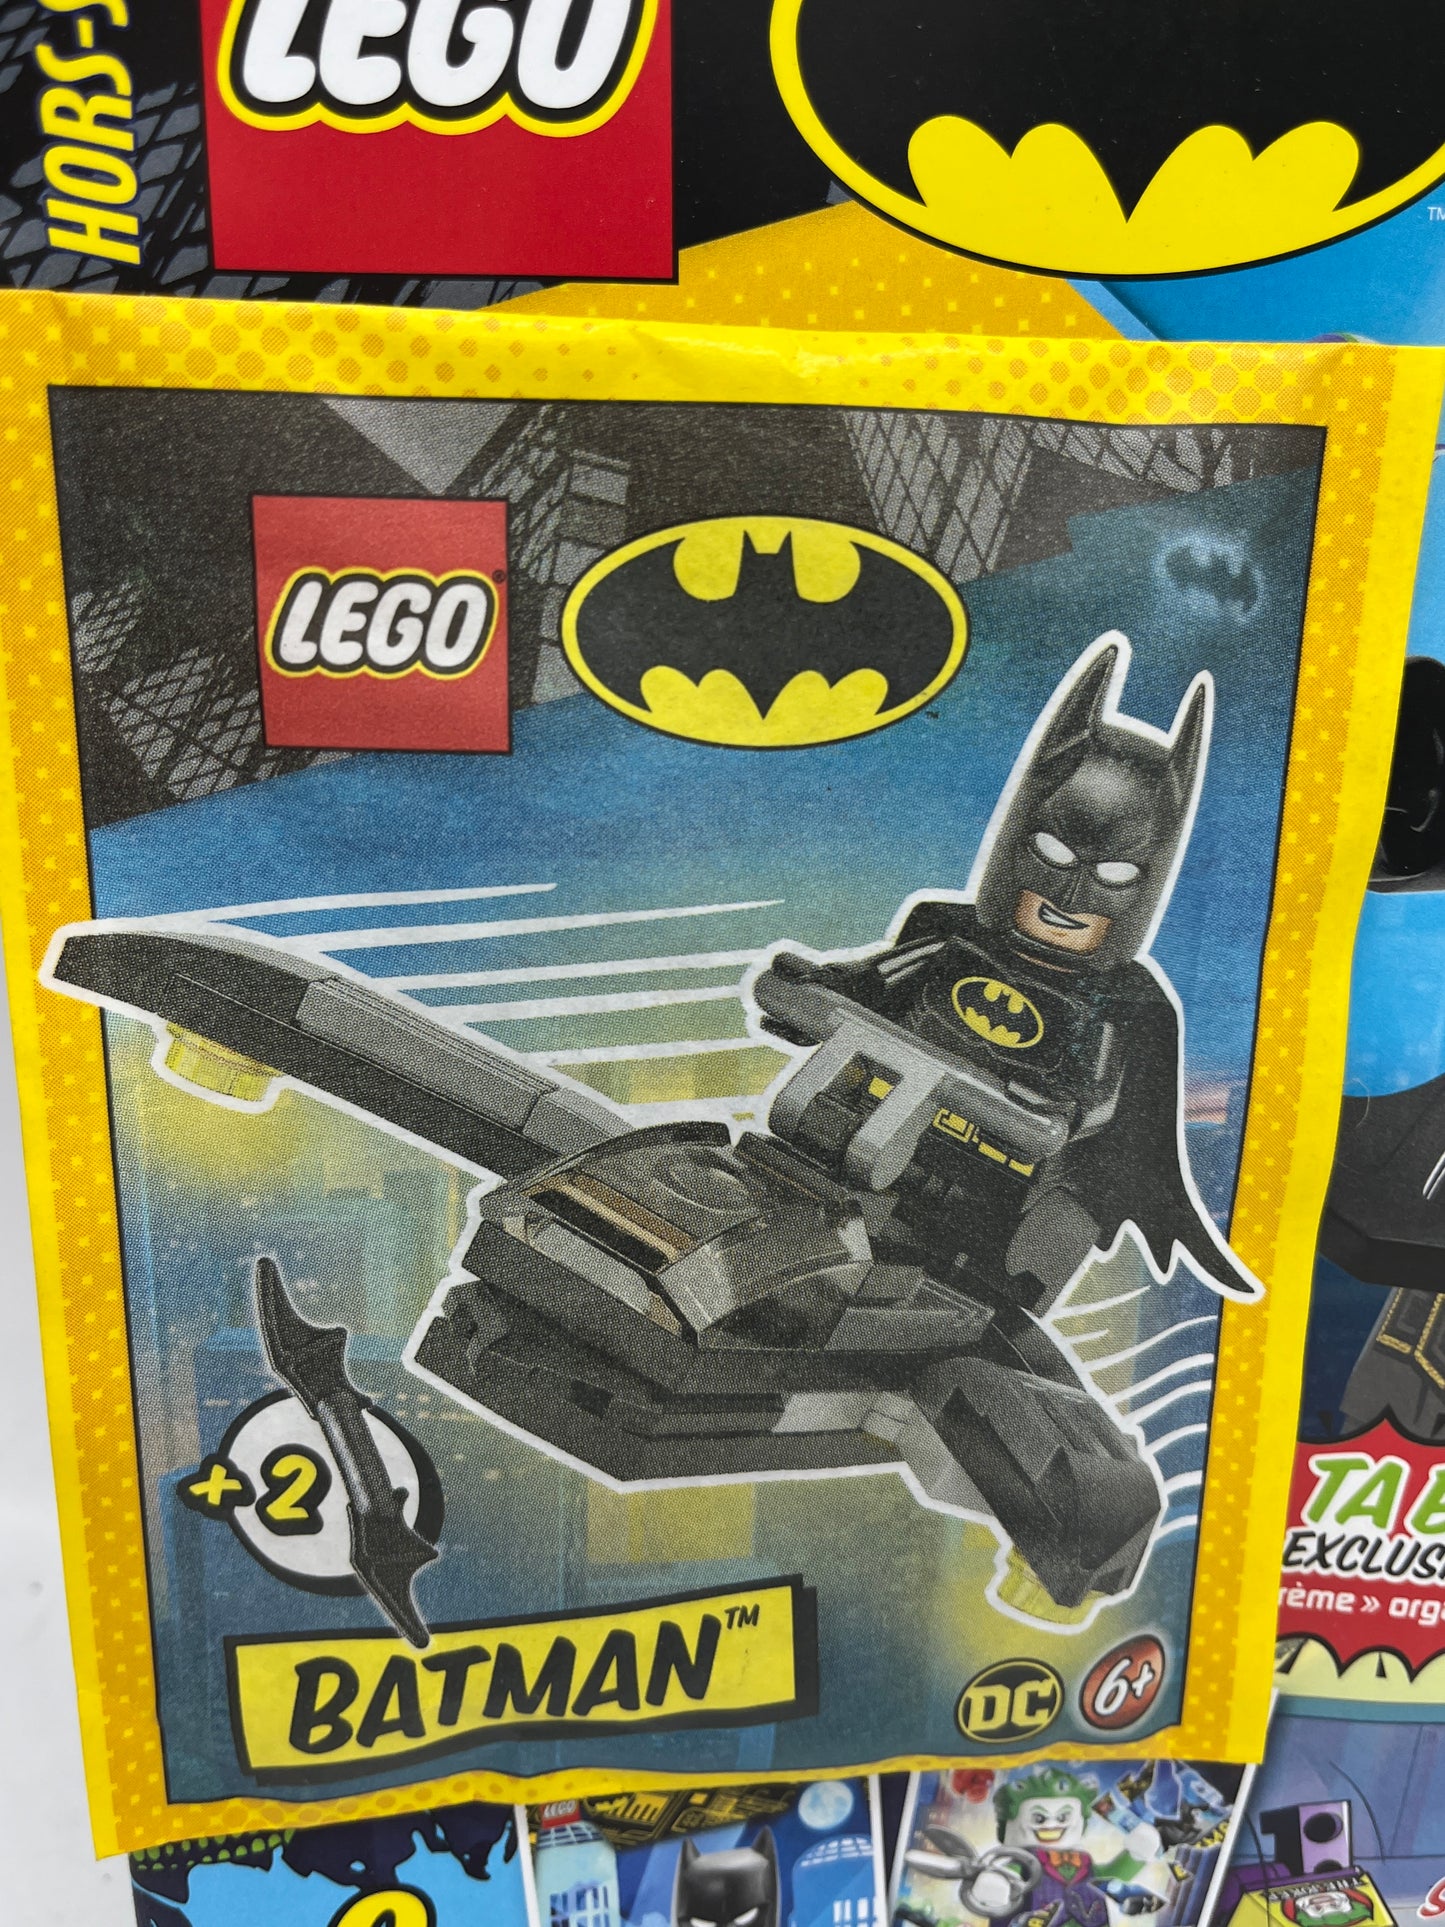 livre d’activité Magazine Lego Batman avec sa minifigure Batman et son jet trop cool  Neuf !